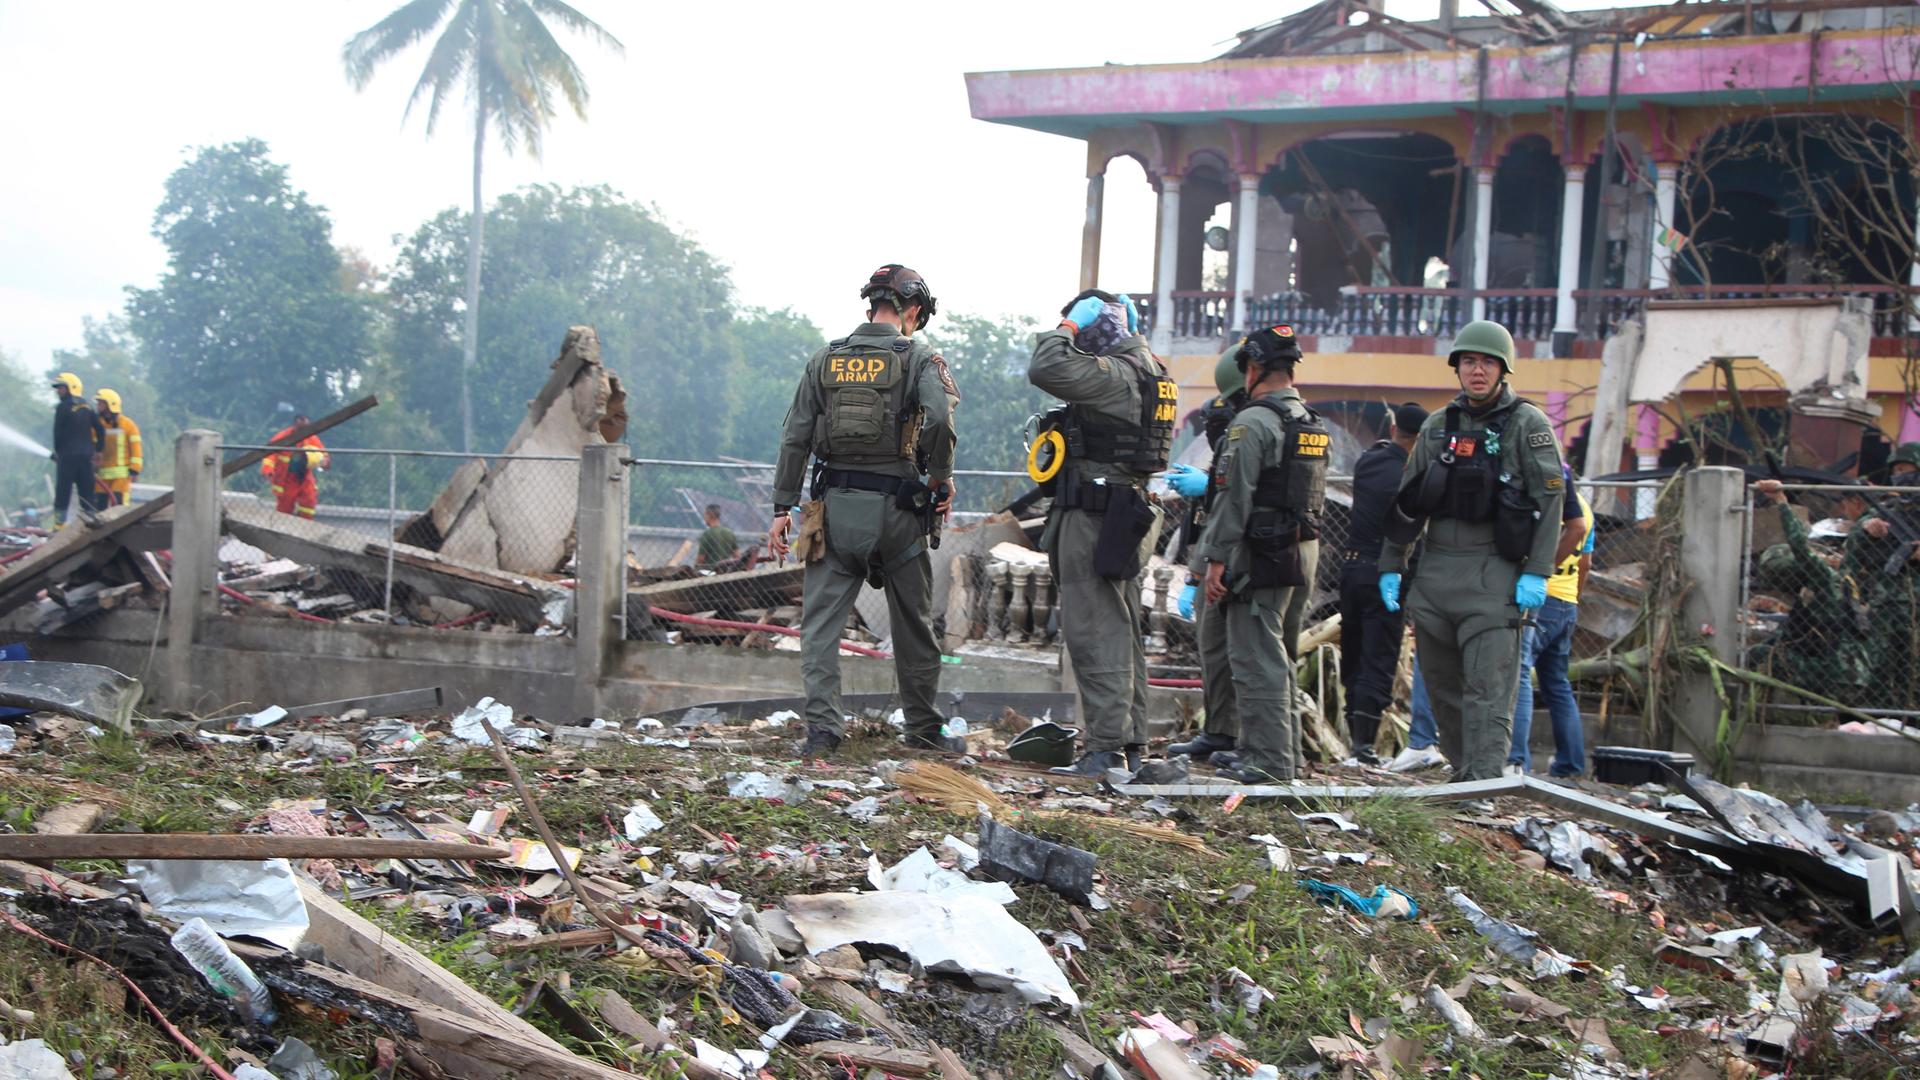 Einsatzkräfte des Kampfmittelräumdienstes stehen vor einem zerstörten Gebäude. Überall liegen Trümmer auf dem Boden.